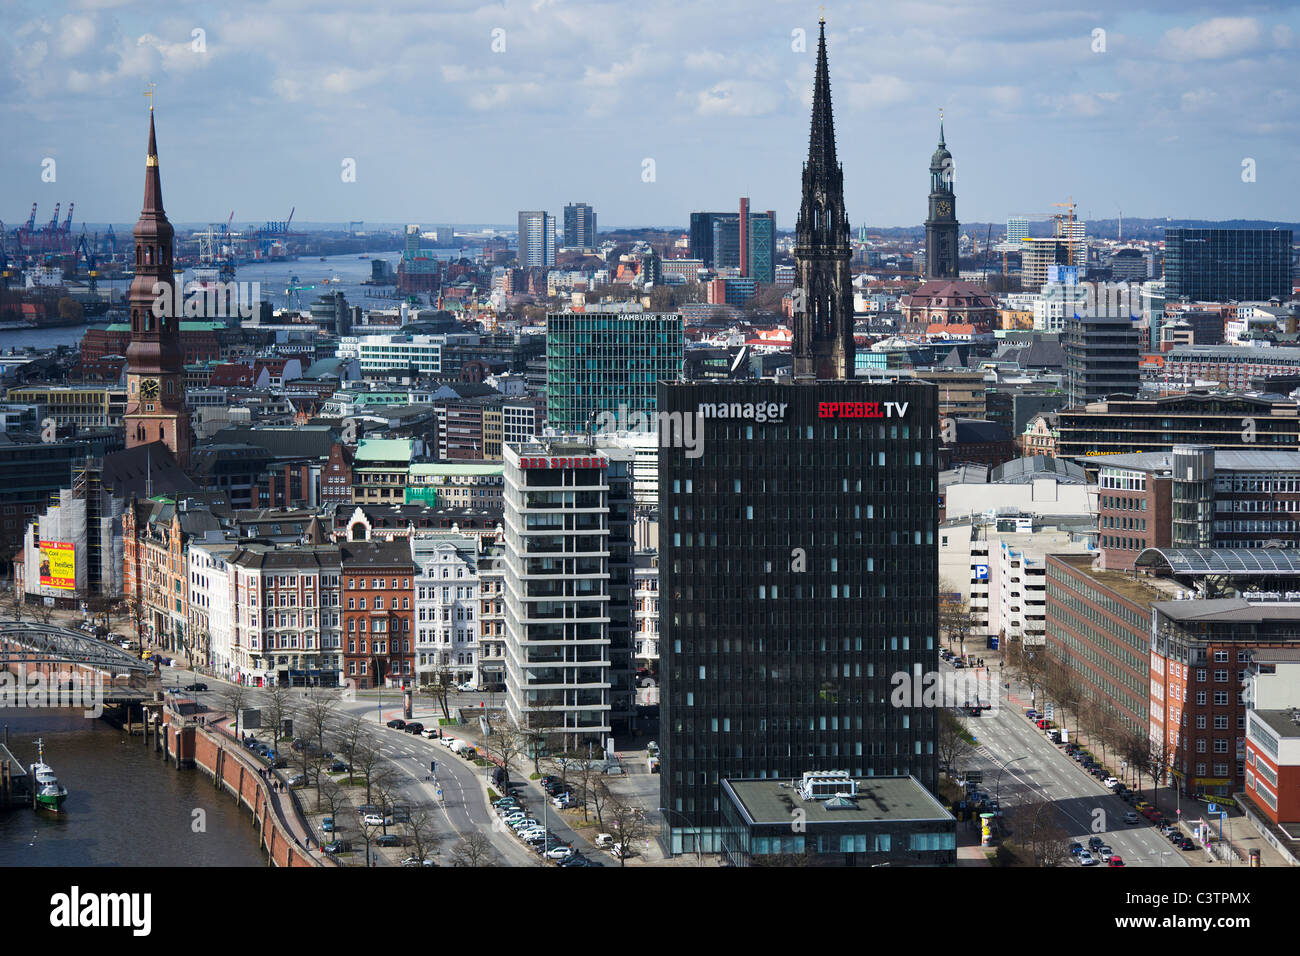 Vue aérienne de Hambourg avec Spiegel TV building vue frontale Photo Stock  - Alamy